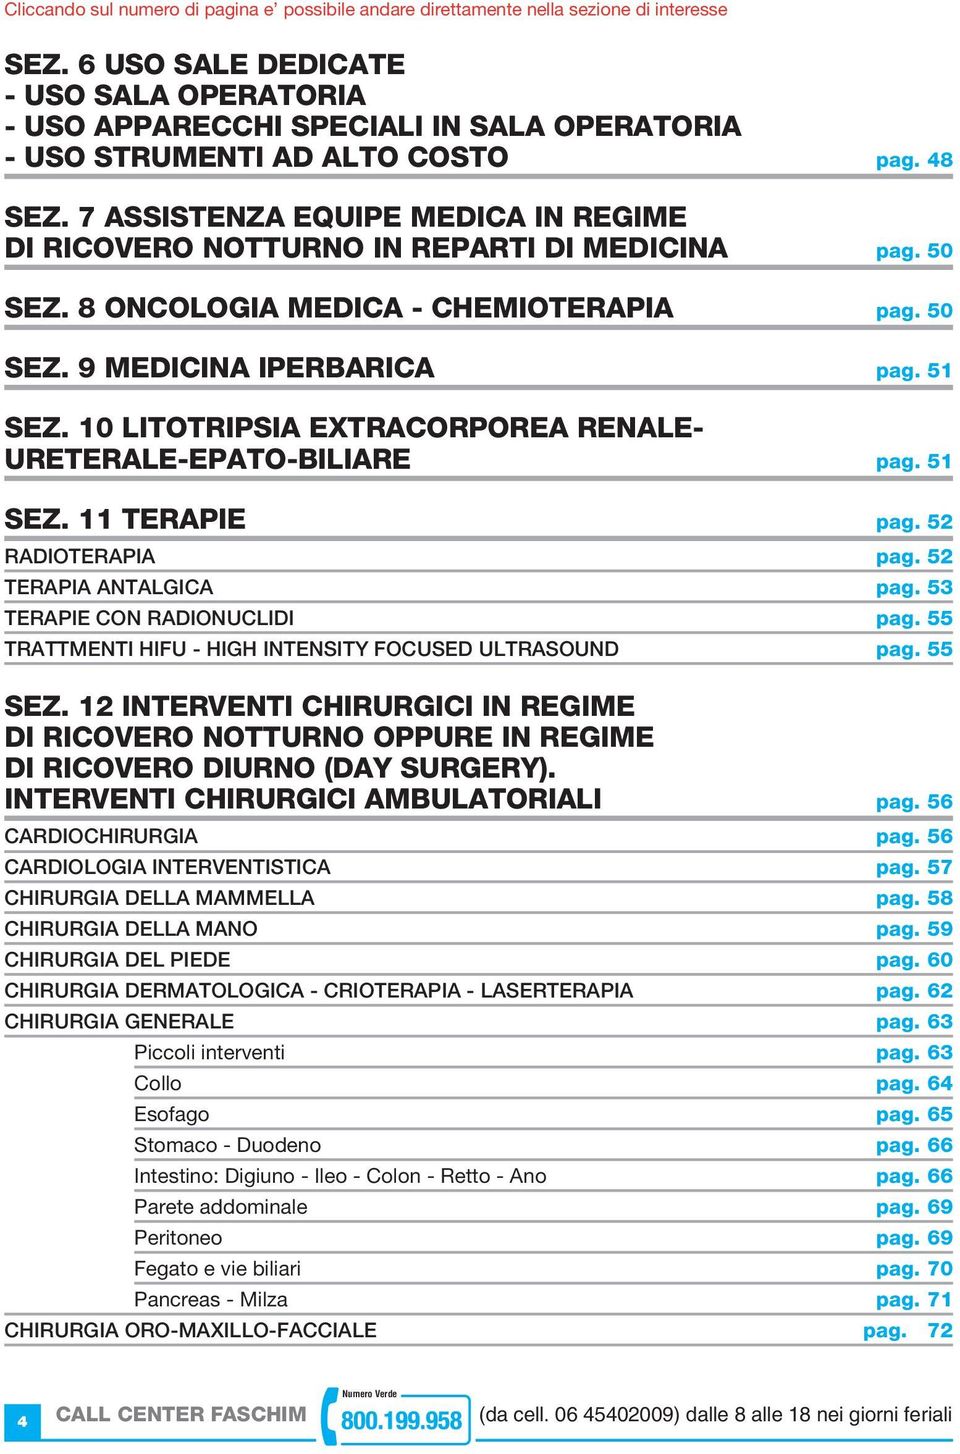 7 ASSISTENZA EQUIPE MEDICA IN REGIME DI RICOVERO NOTTURNO IN REPARTI DI MEDICINA pag. 50 SEZ. 8 ONCOLOGIA MEDICA - CHEMIOTERAPIA pag. 50 SEZ. 9 MEDICINA IPERBARICA pag. 51 SEZ.